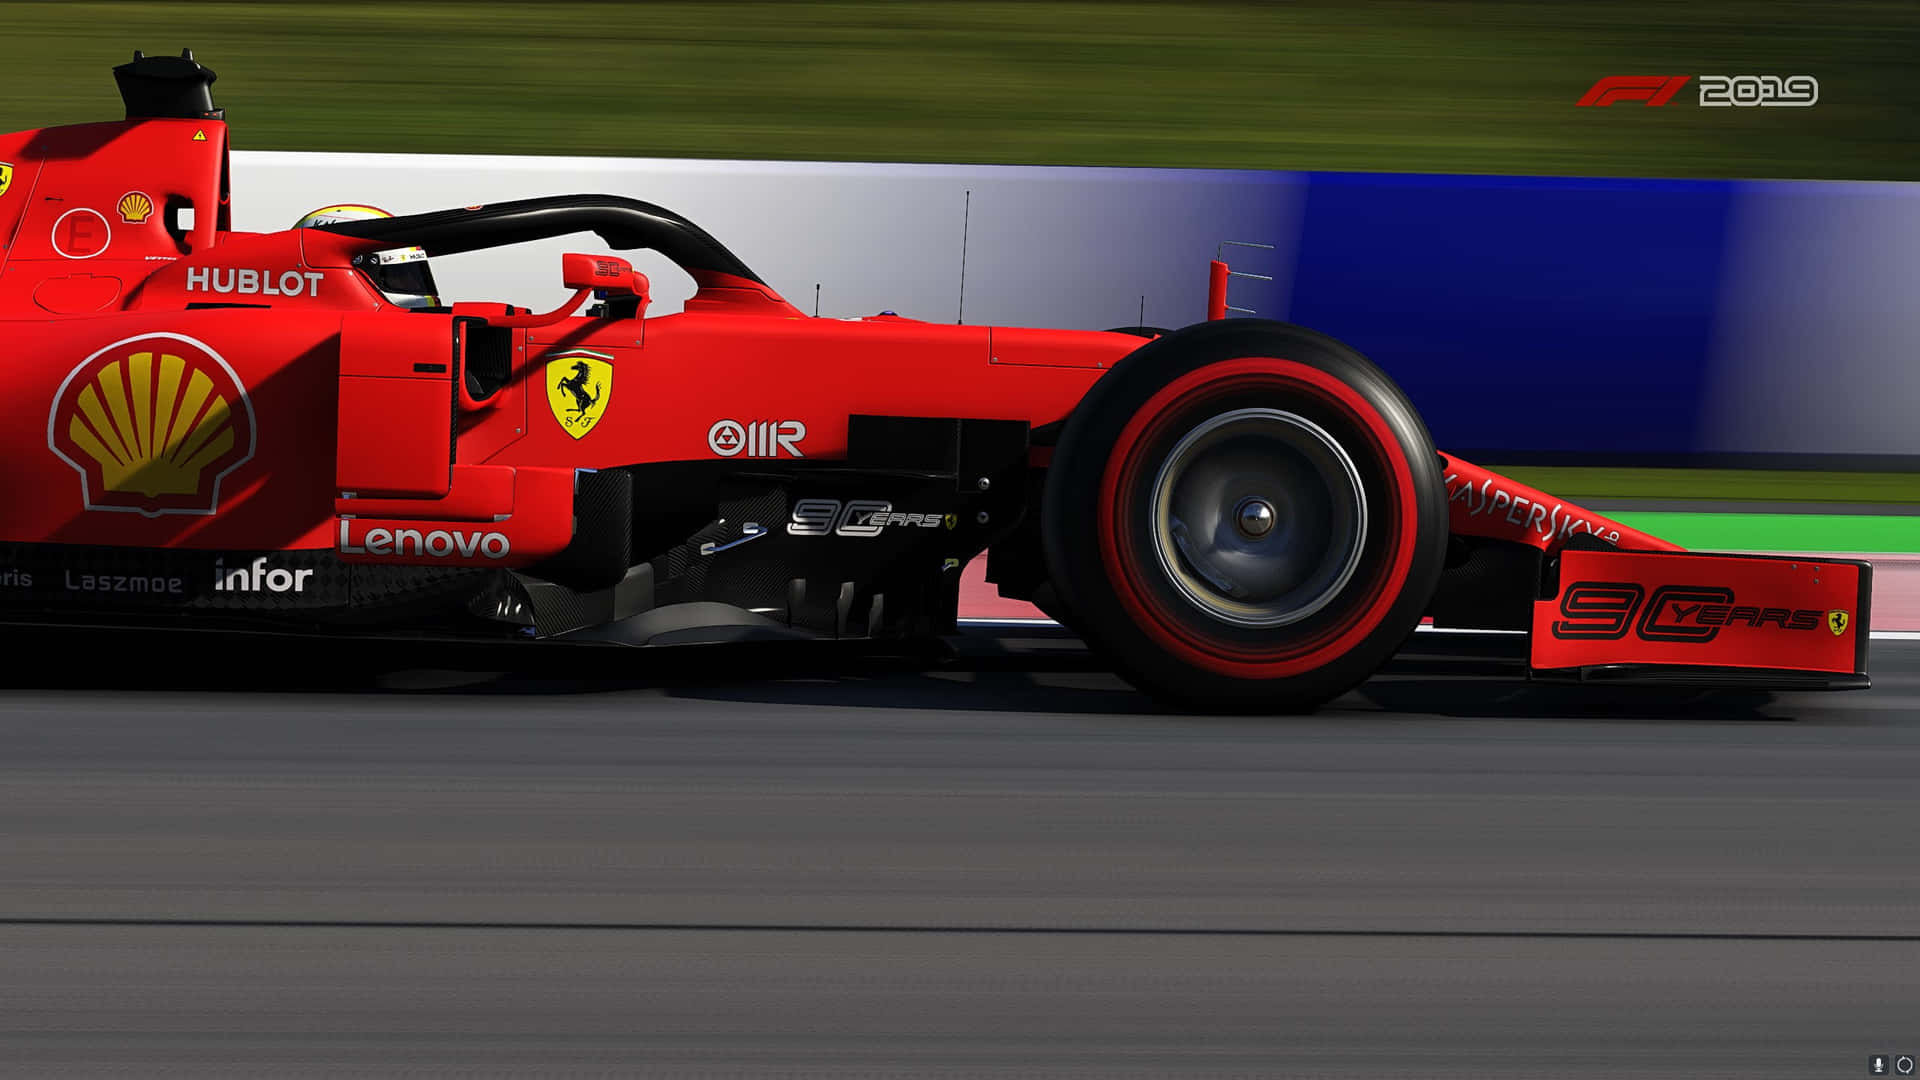 “Scuderia Ferrari F1 Championship Potentiel” Wallpaper